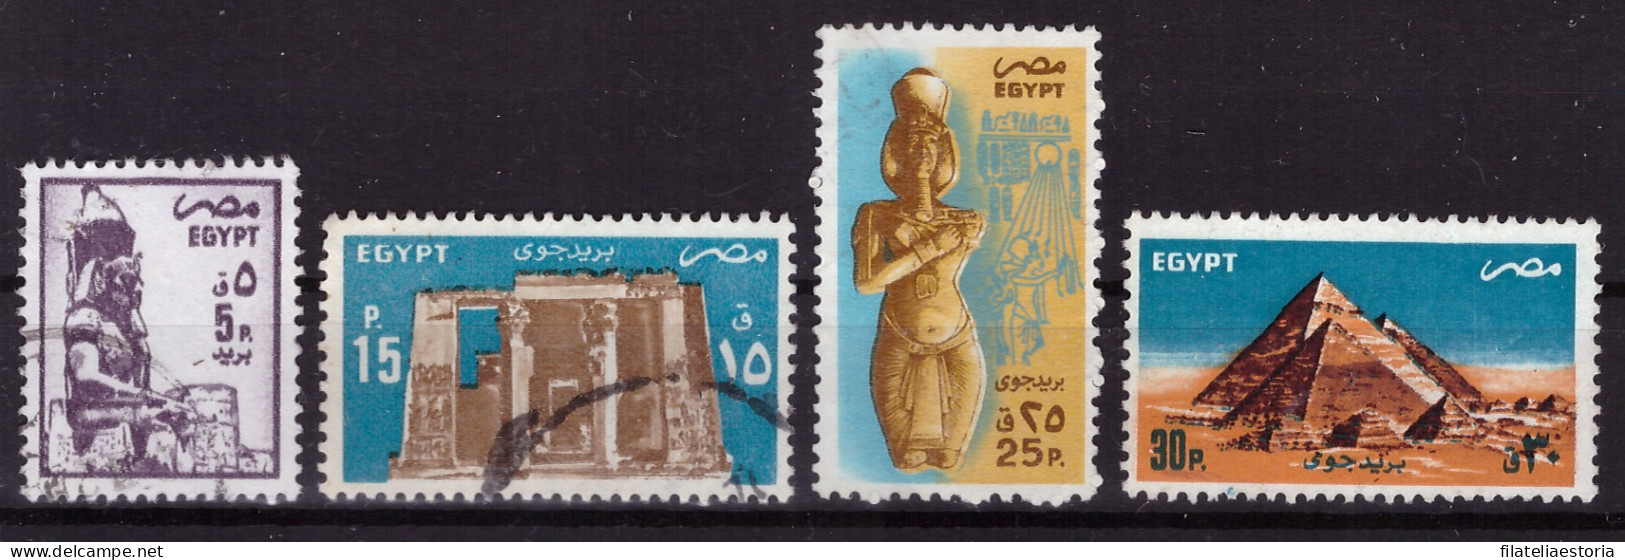 Egypte 1985/1998 - Oblitéré - Monuments - Art - Michel Nr. 1501 1506 1509-1510 (egy361) - Gebruikt